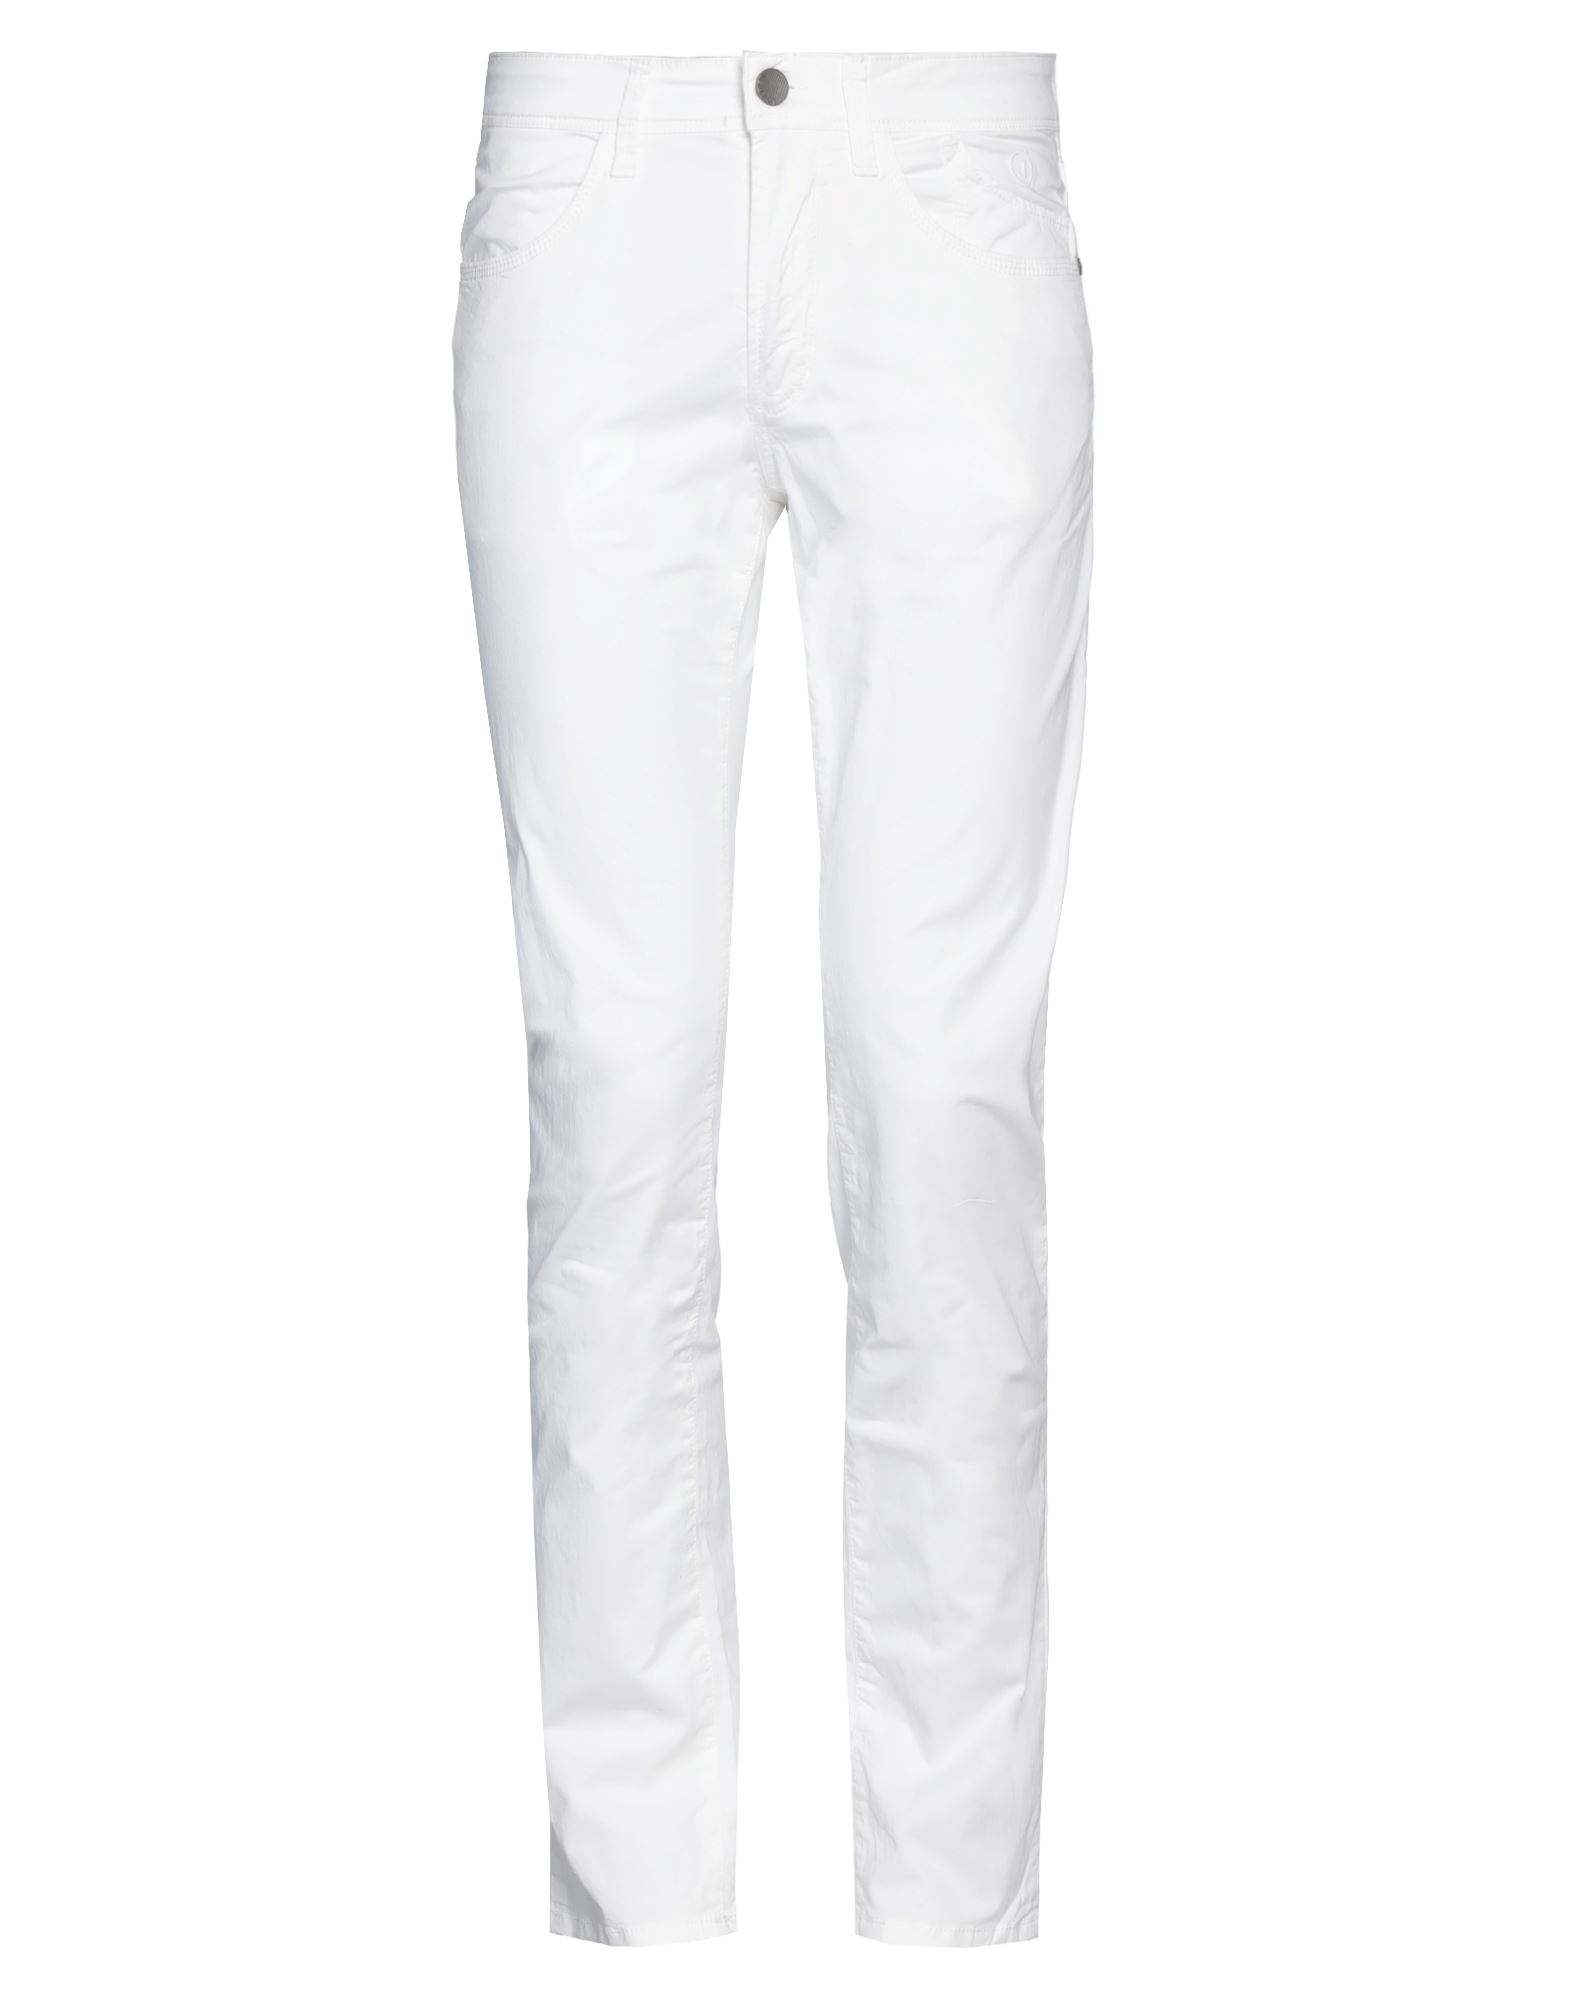 Shop Jeckerson Man Pants White Size 32 Cotton, Elastane